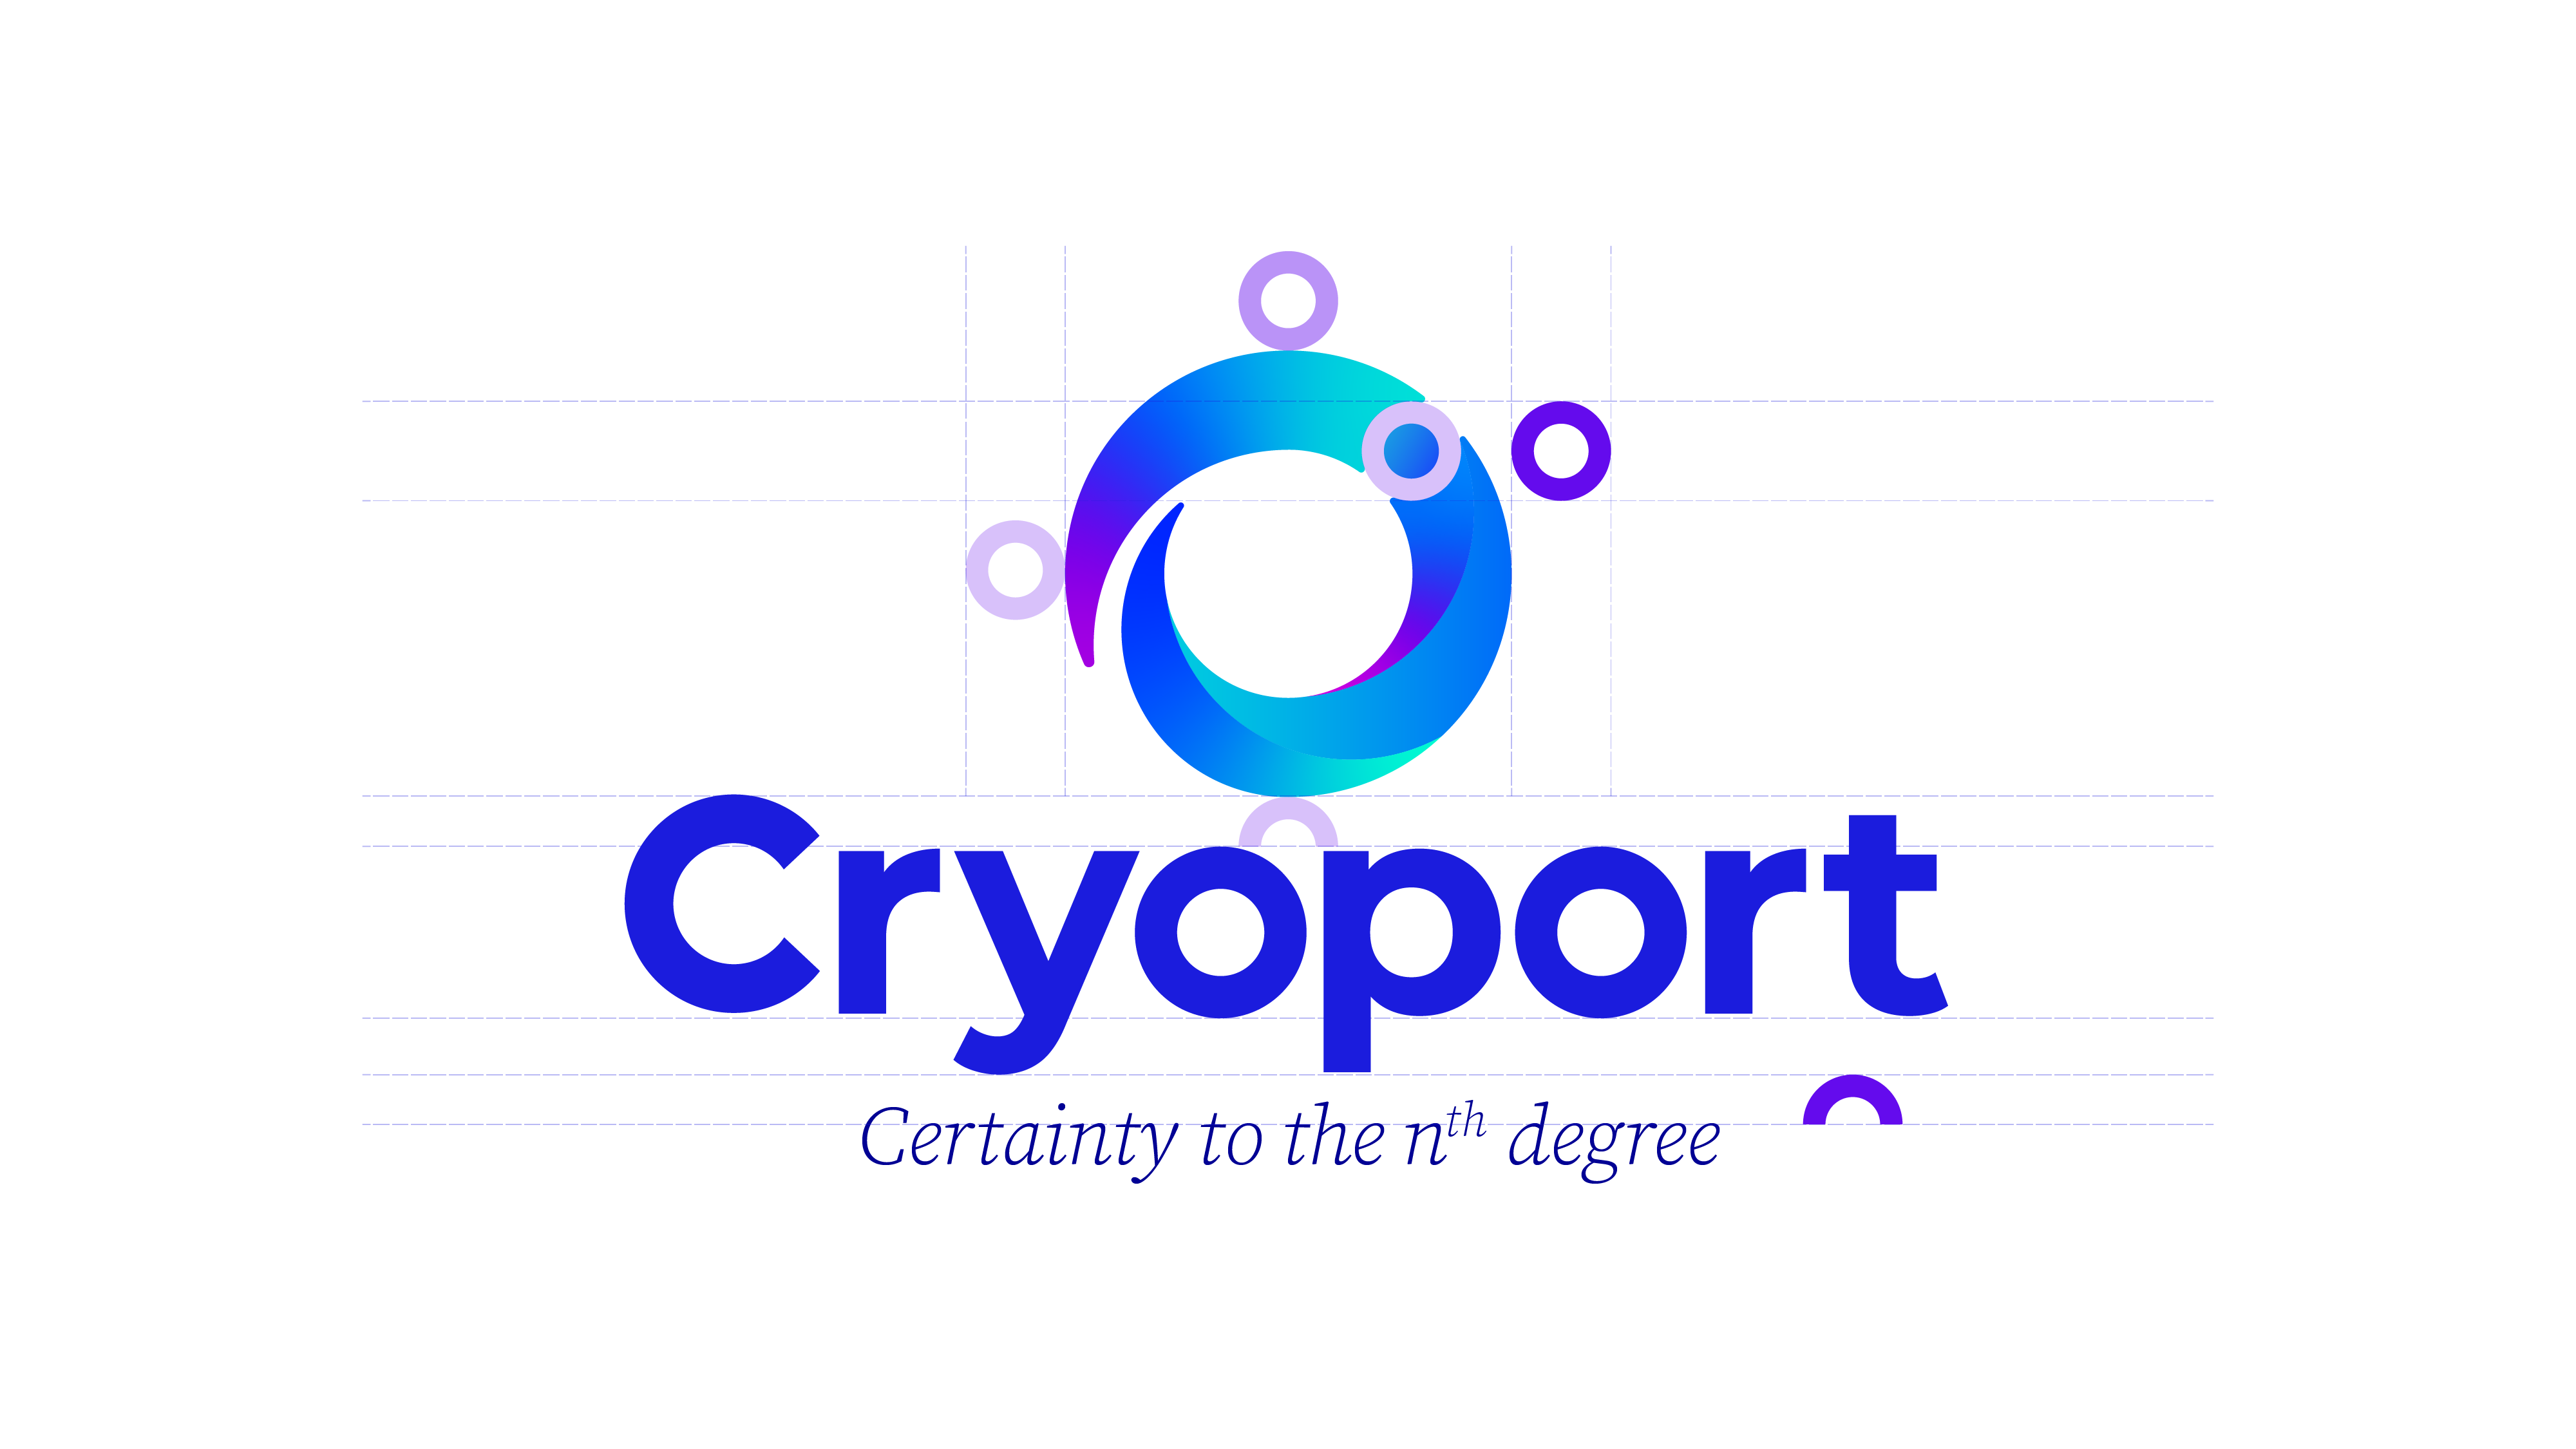 Cryoport_logo_exclusion_zones-07_AH